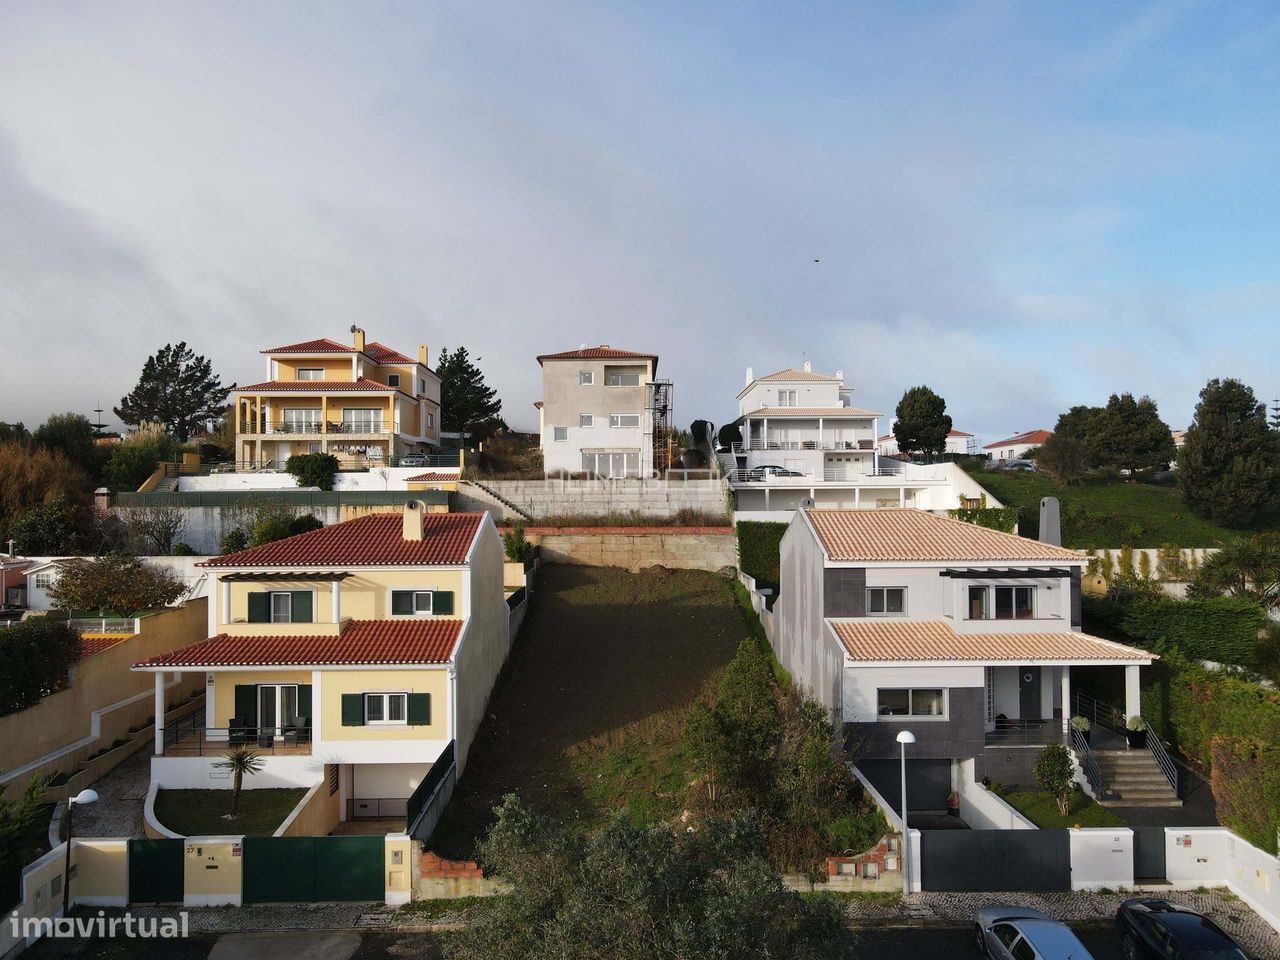 Terreno Urbano para construção de uma moradia em Sintra